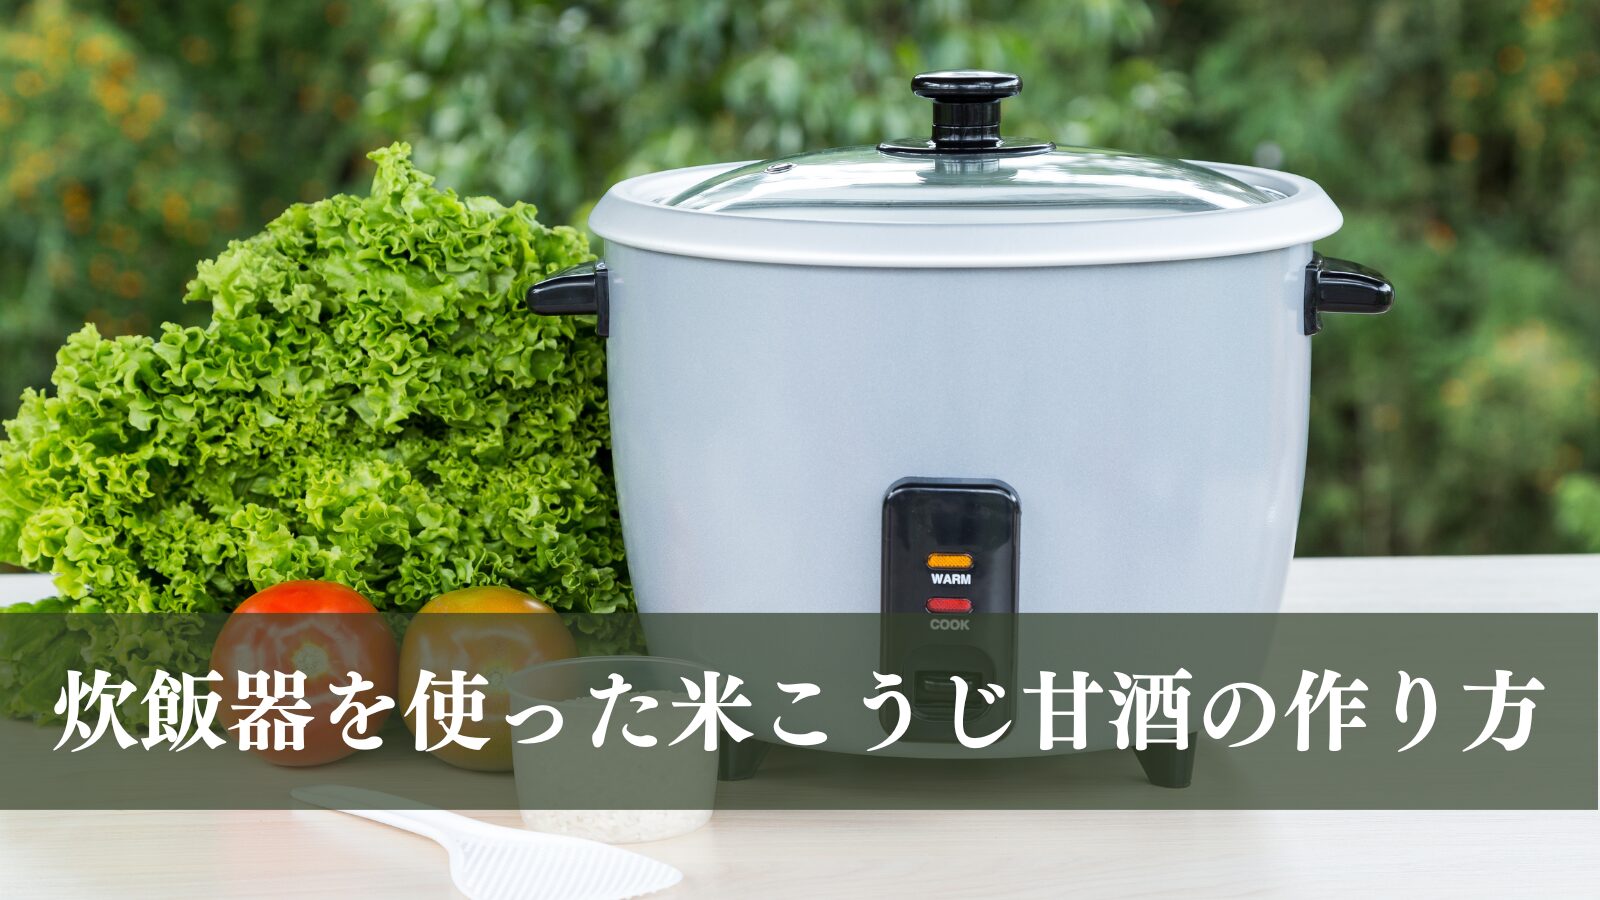 [Amazake recipe]How to make rice koji amazake using a rice cooker(eyecatch)